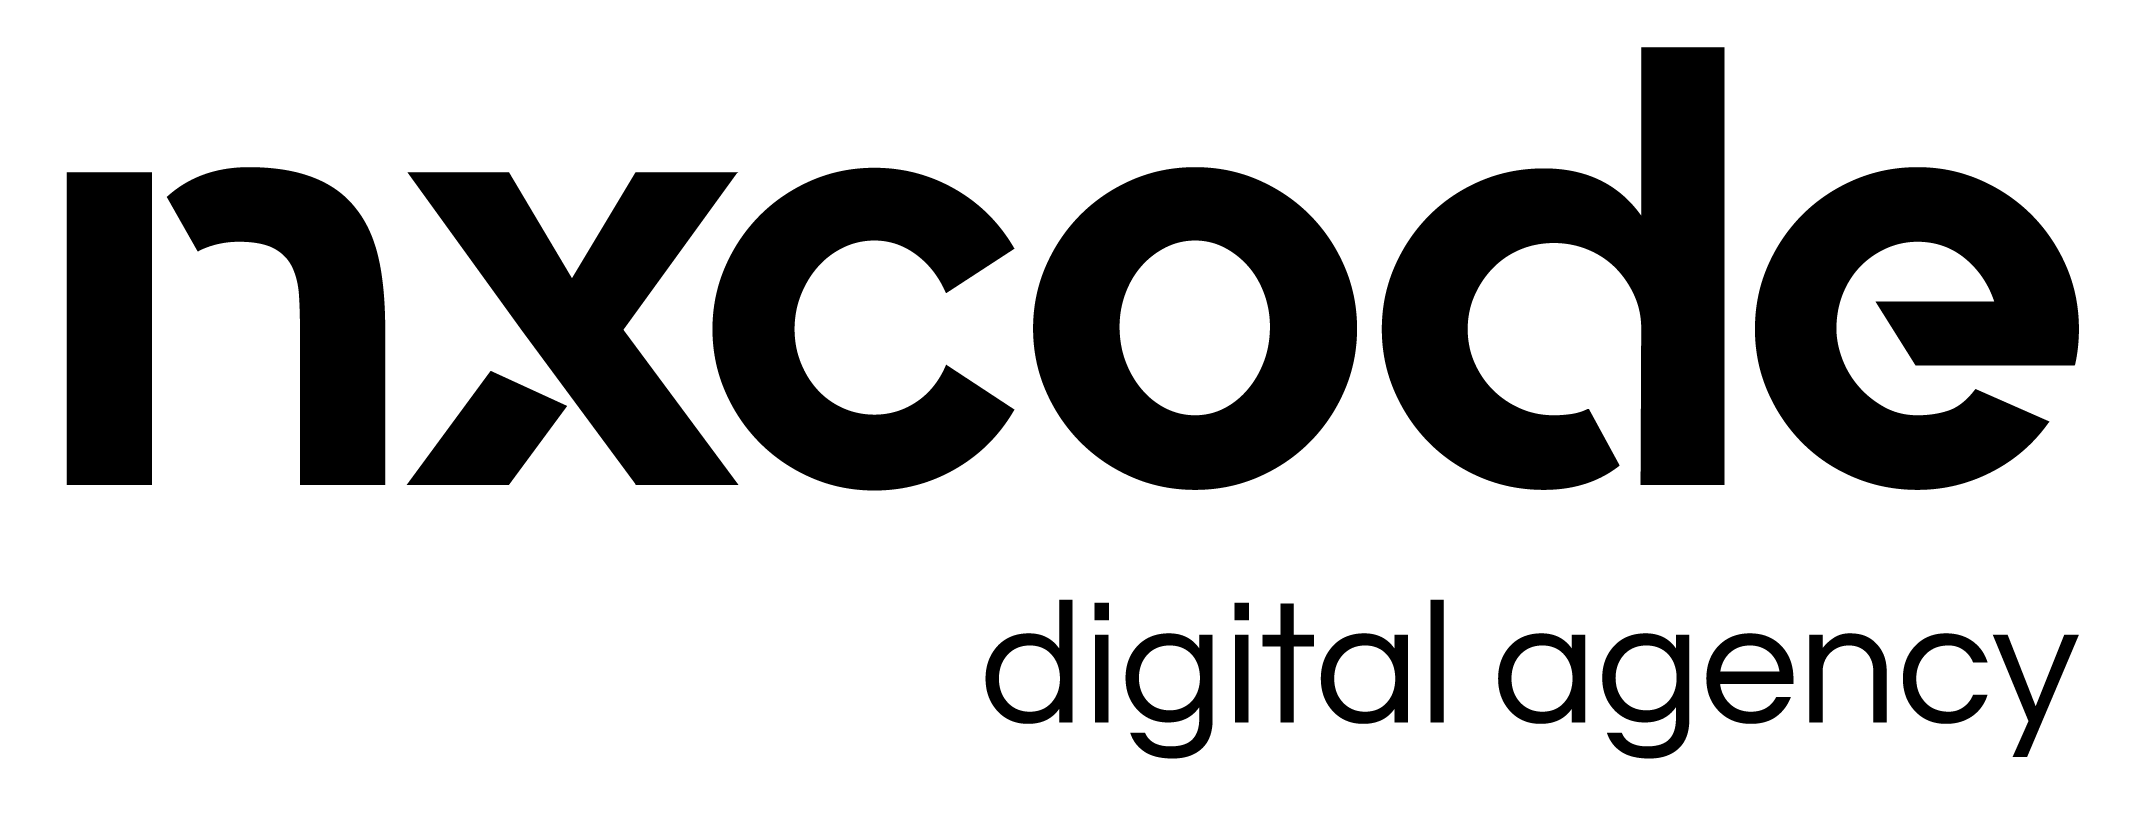 nxcode logo